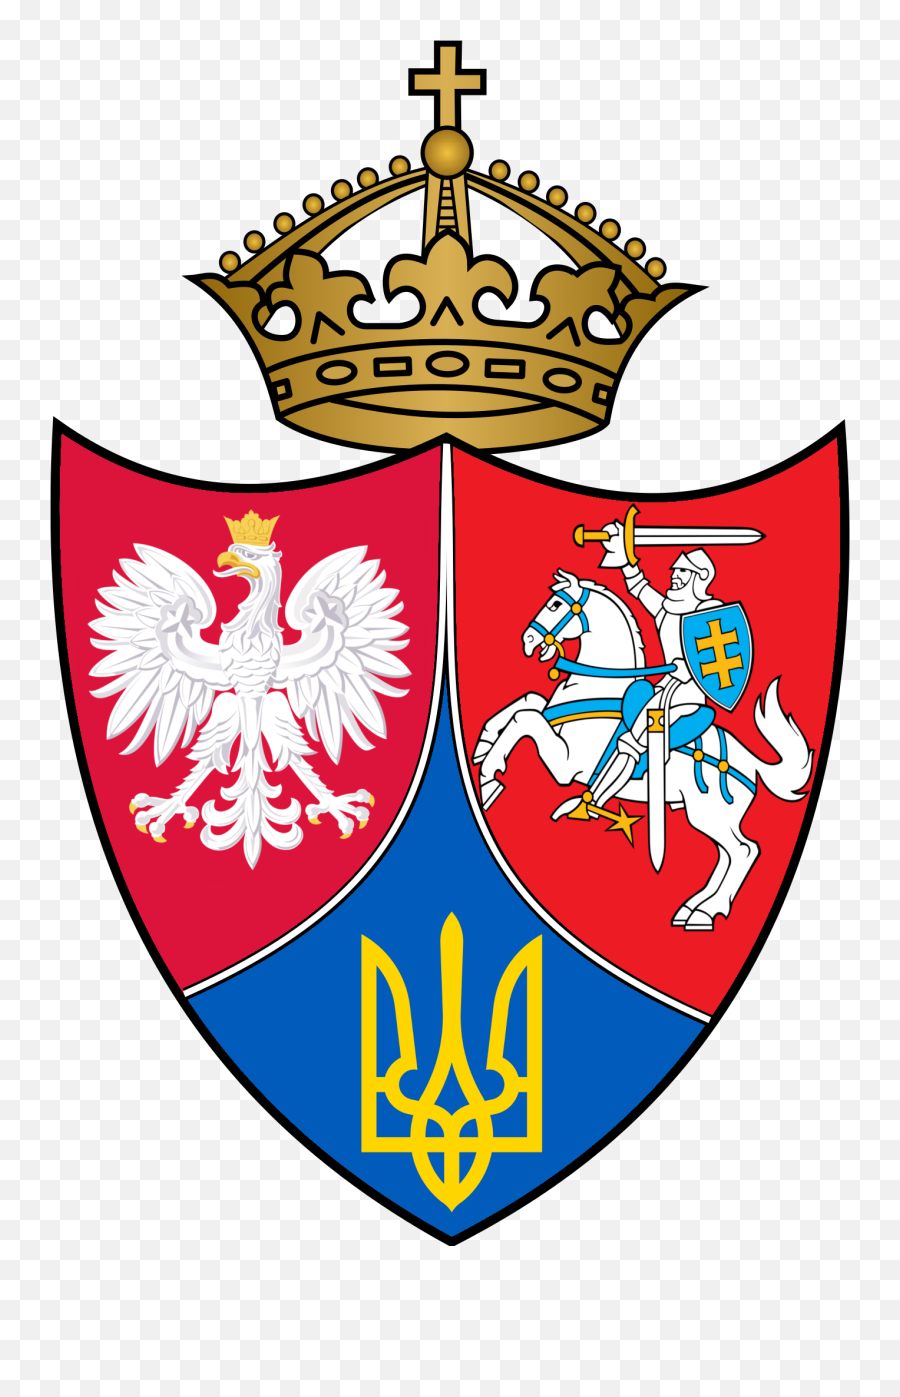 Arms Of The Lublin Triangle Organization My Proposal Based Emoji,Triagular Ruler Emoji